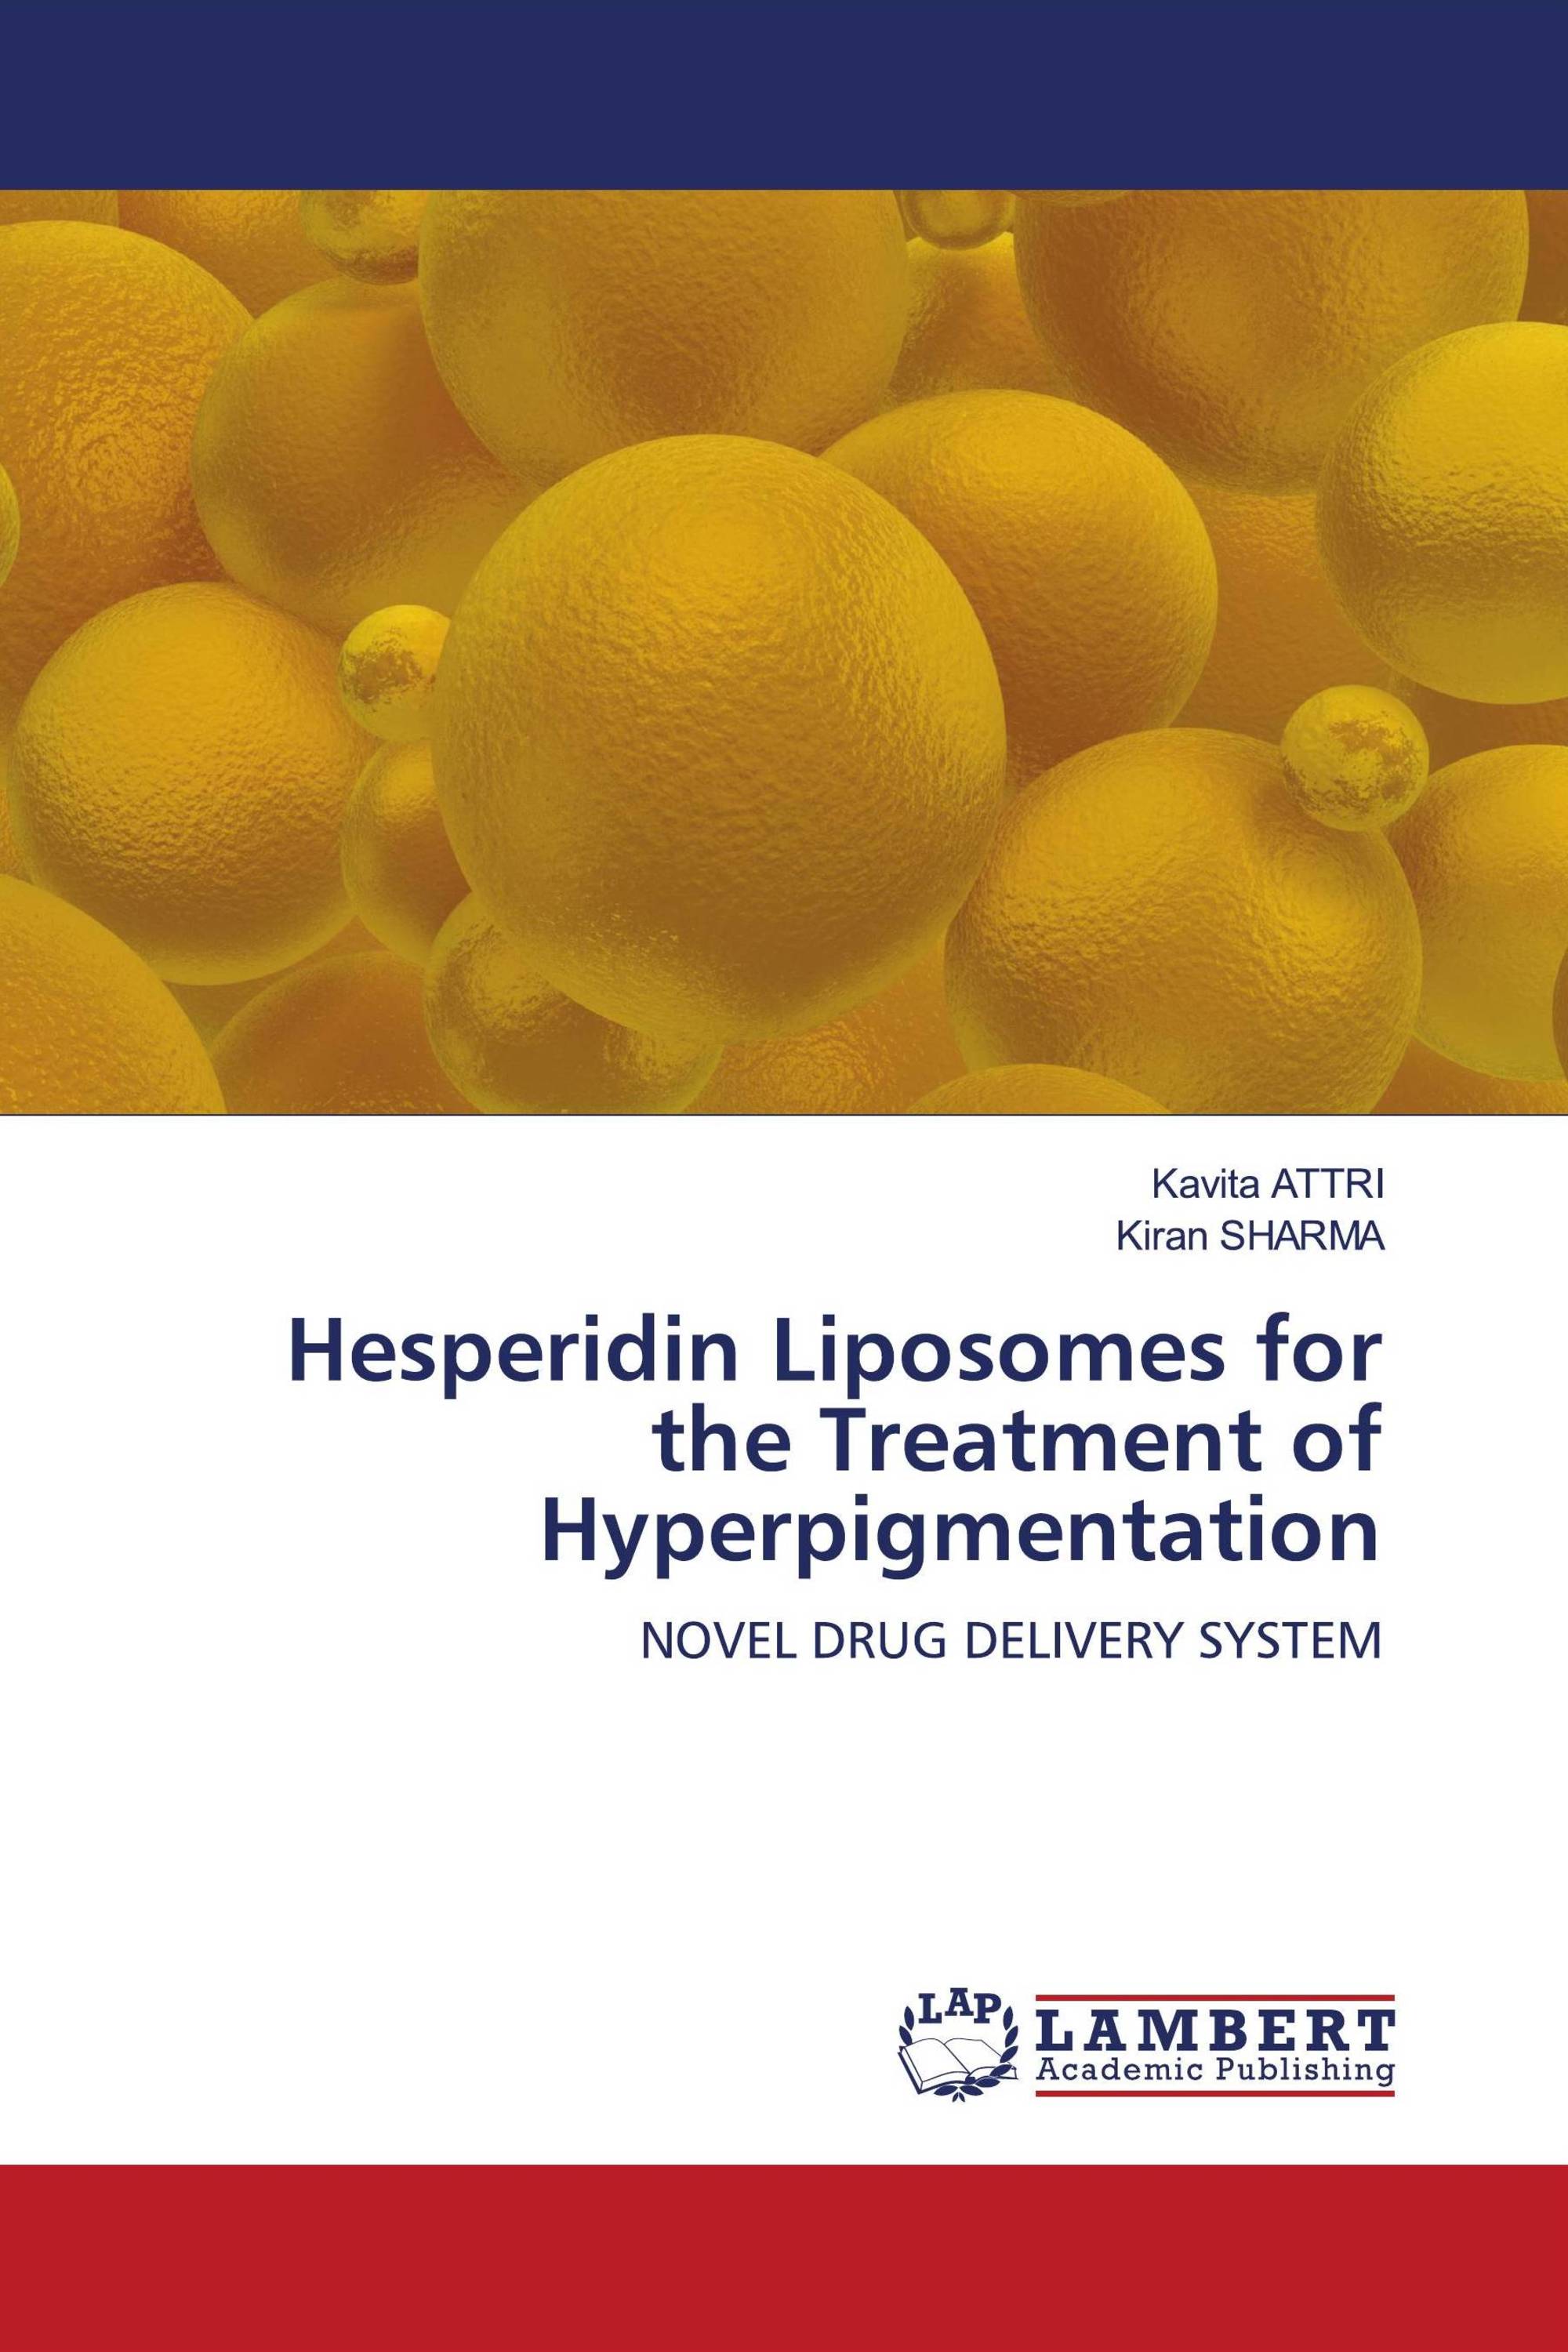 Hesperidin Liposomes for the Treatment of Hyperpigmentation